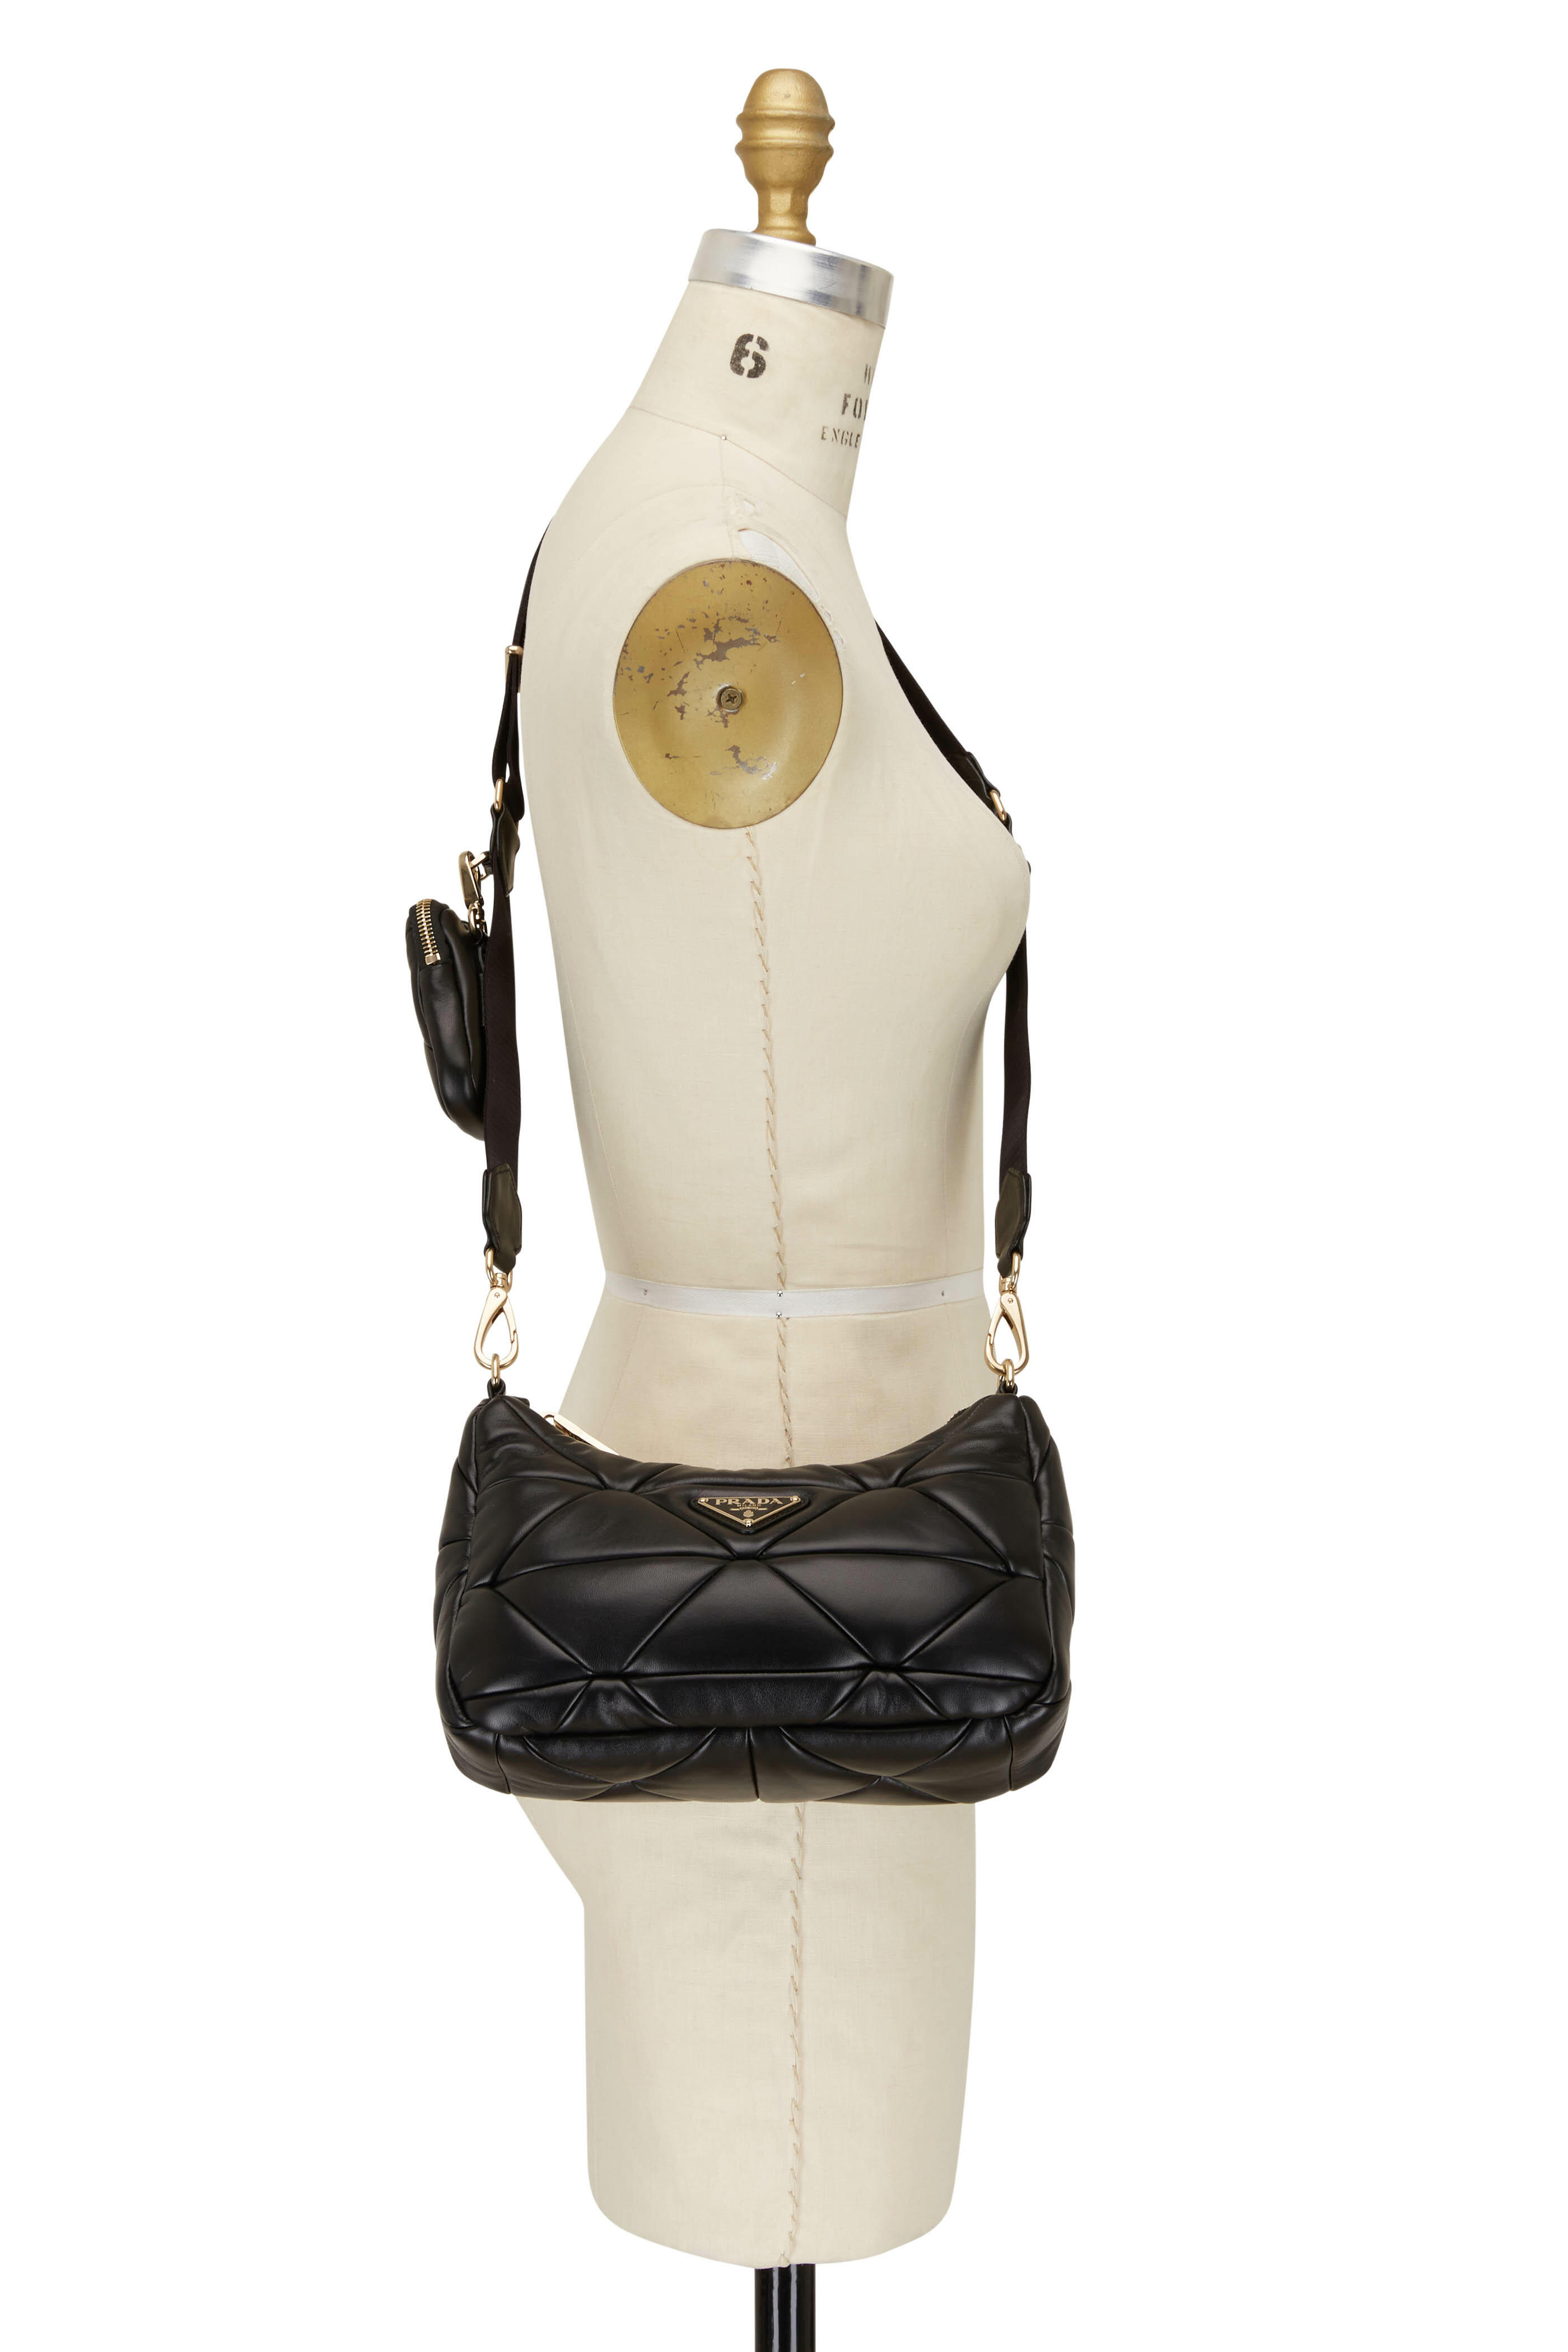 Prada - Women's System Nappa Patchwork Bag Shoulder Bag - Black - Leather